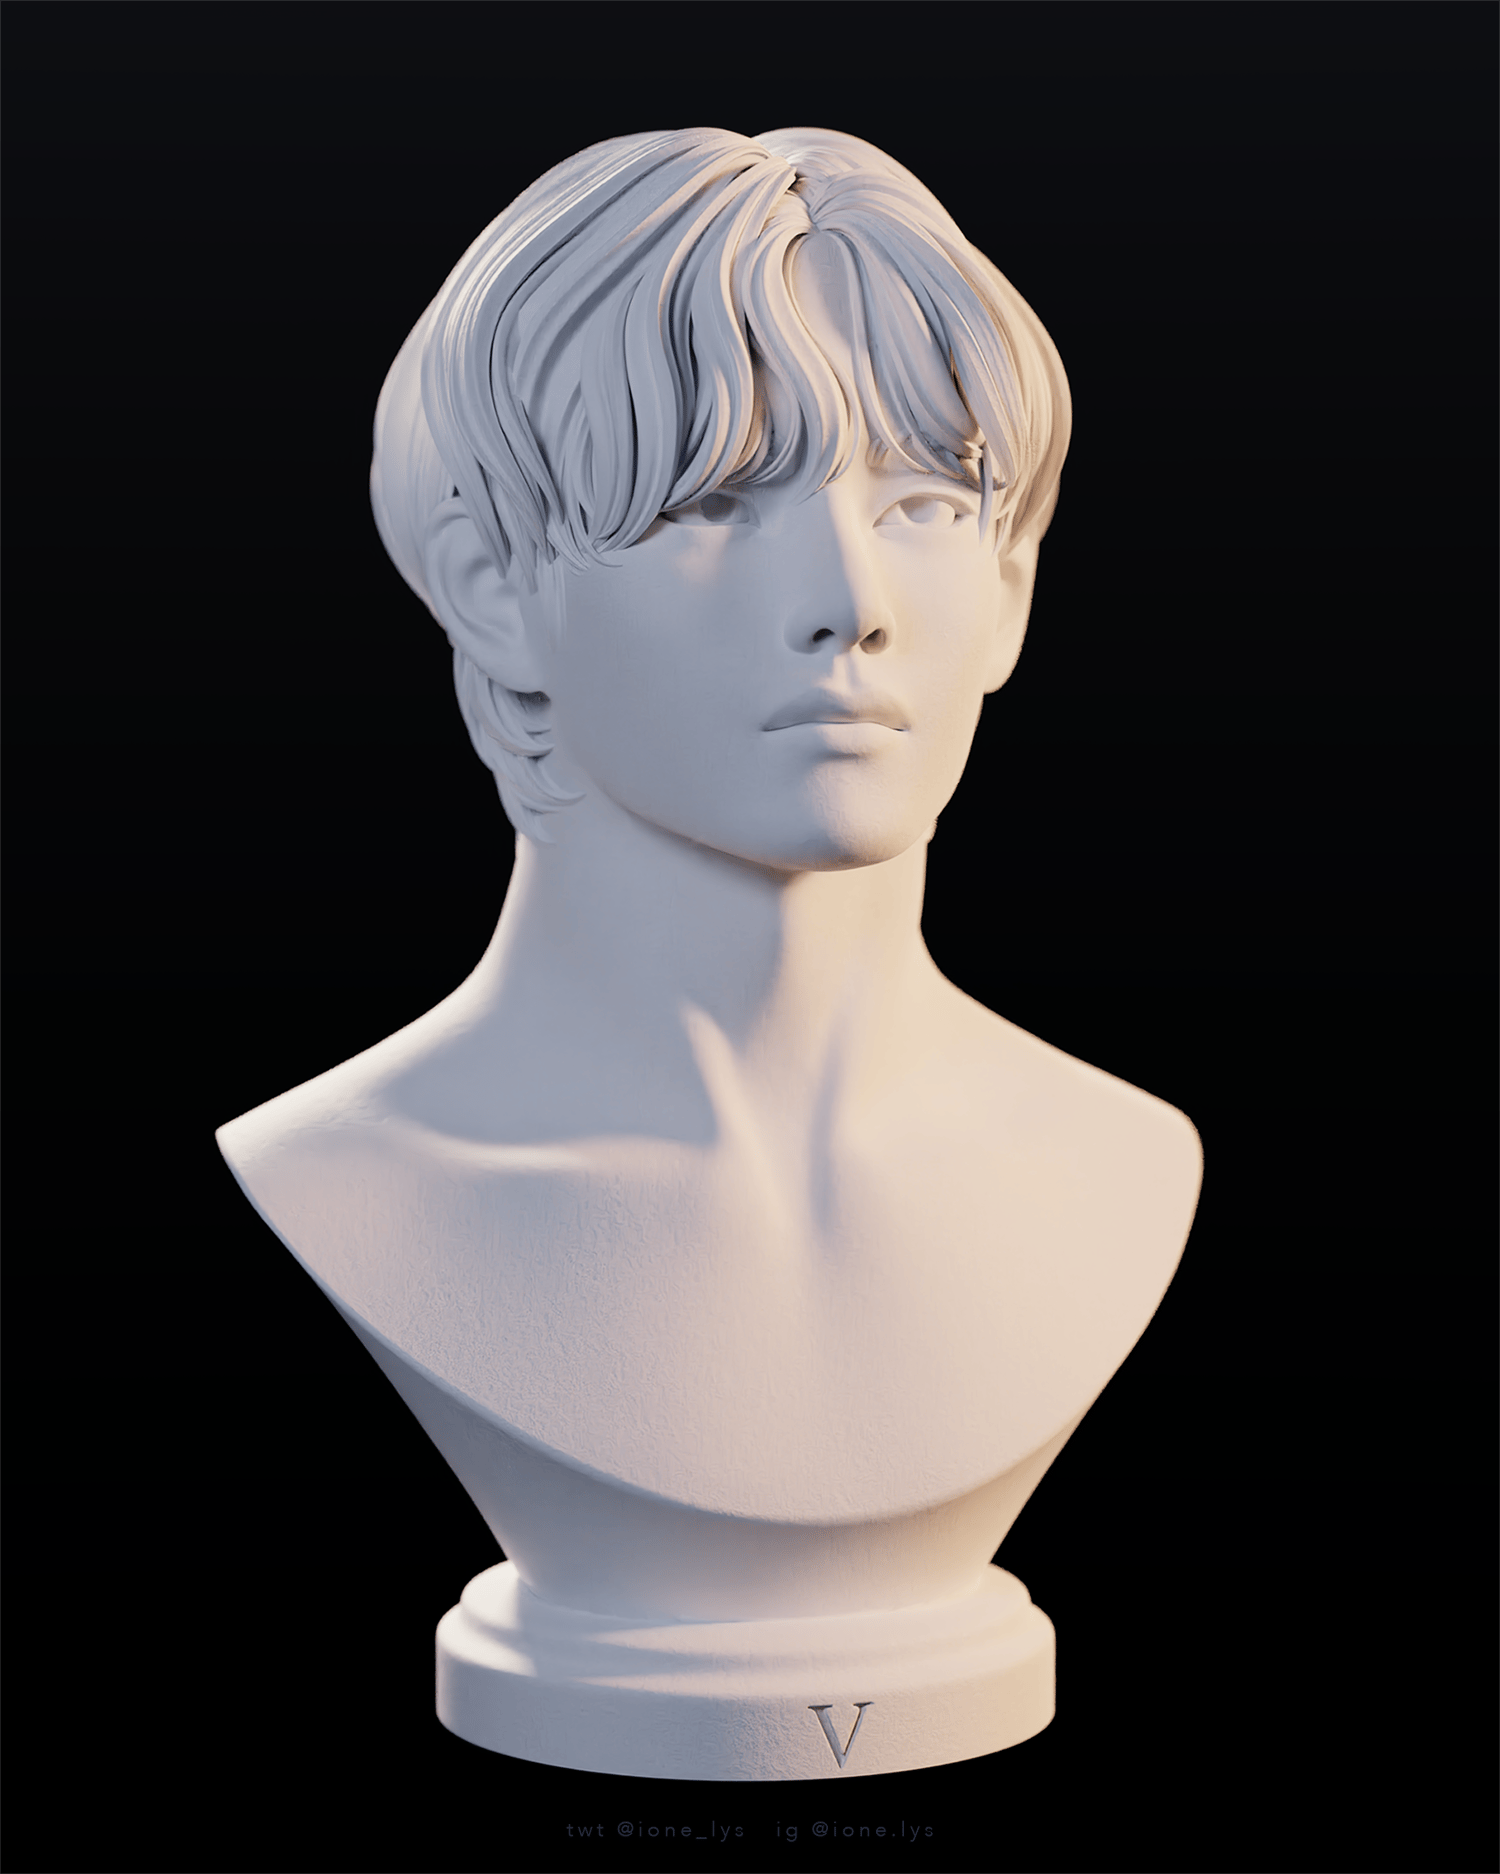 V 3D printed bust